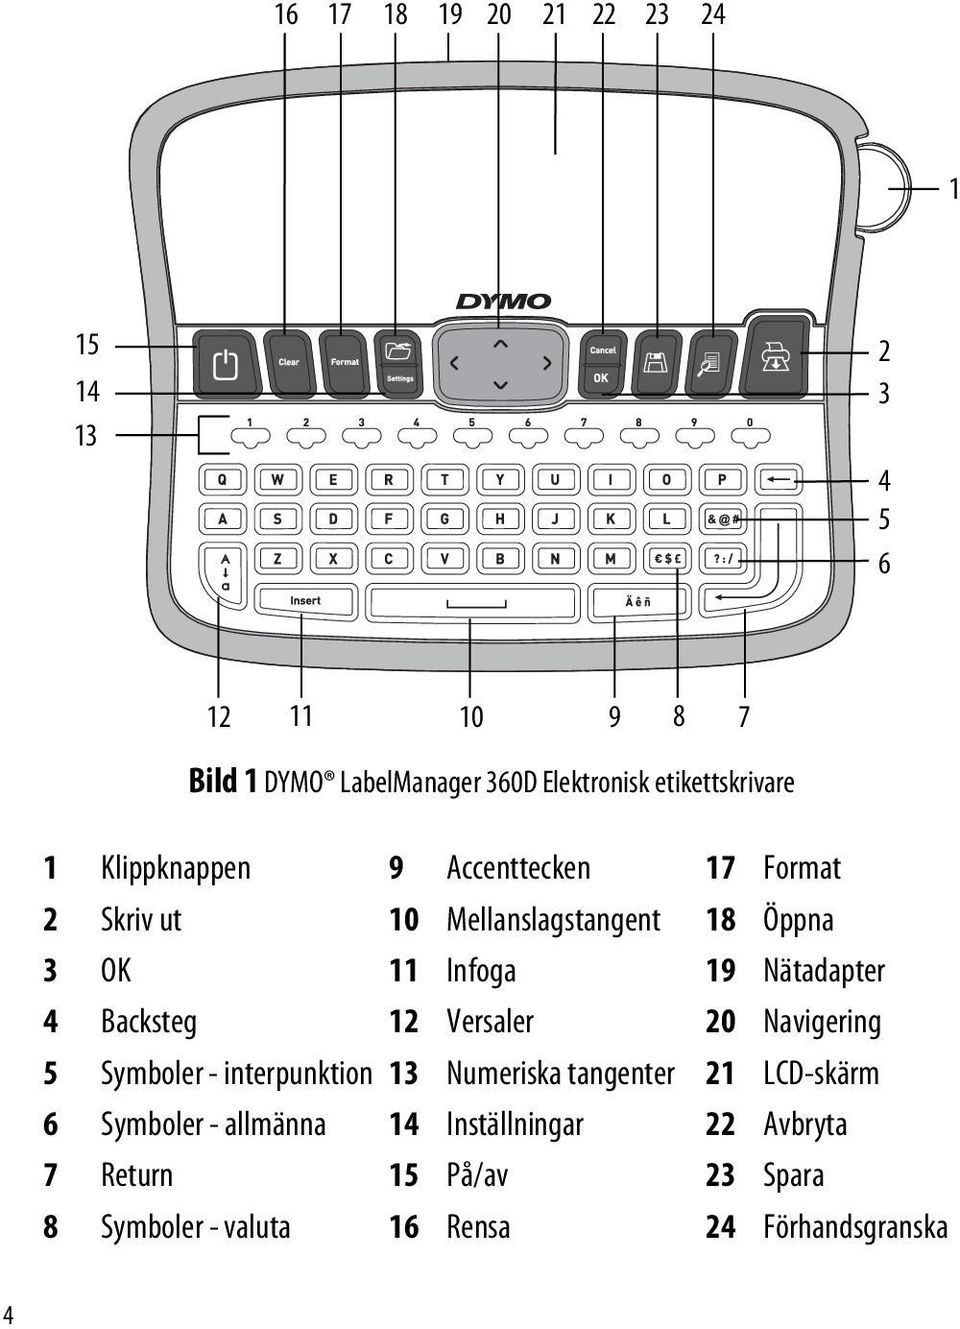 Nätadapter 4 Backsteg 12 Versaler 20 Navigering 5 Symboler - interpunktion 13 Numeriska tangenter 21 LCD-skärm 6